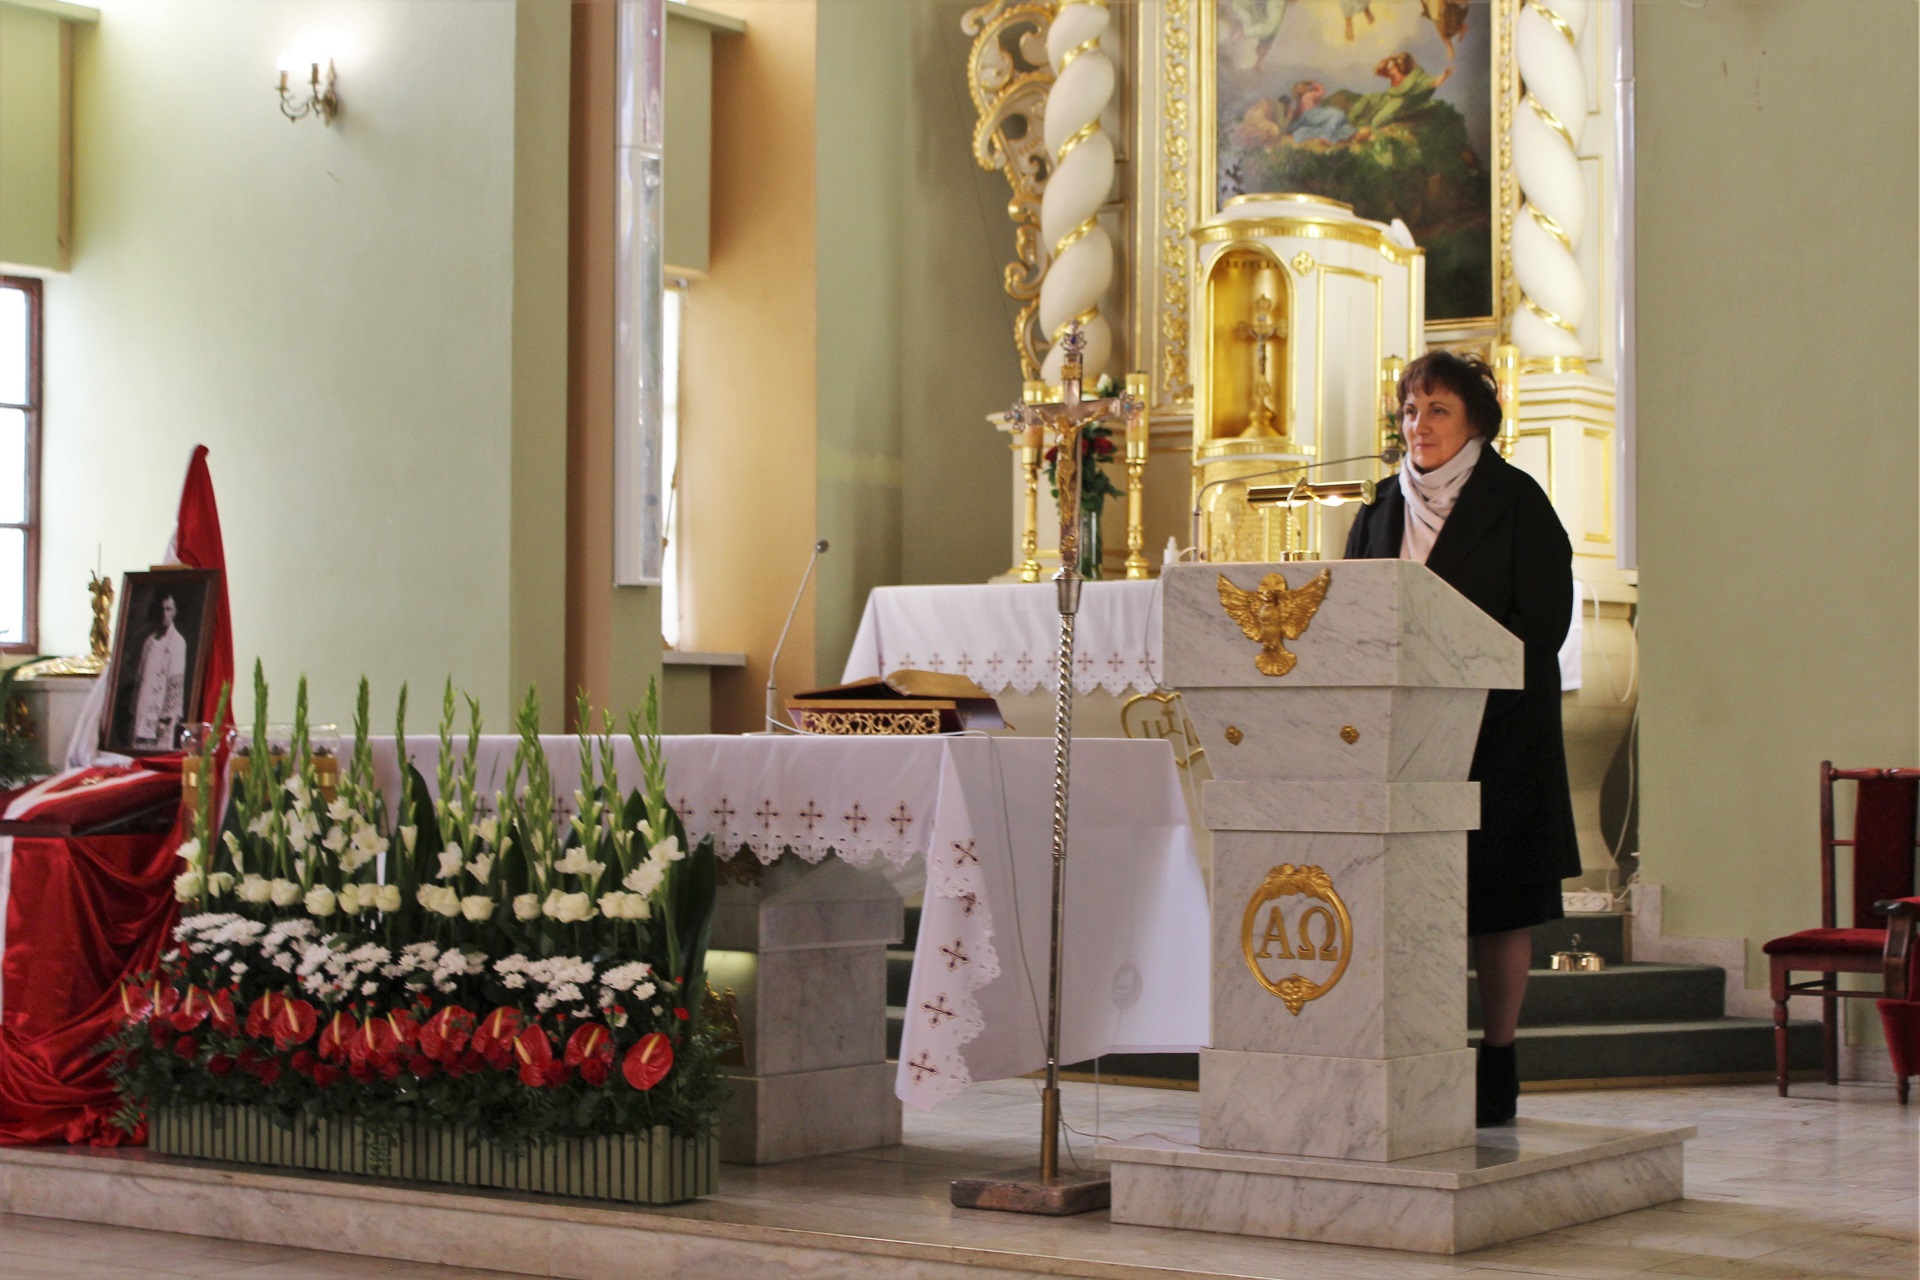 Widok na ołtarz kościoła św. Wojciecha w Skibniewie. Po prawej stronie za kamienną mównicą starosta Elżbieta Sadowska zwraca się do obecnych podczas uroczystości.